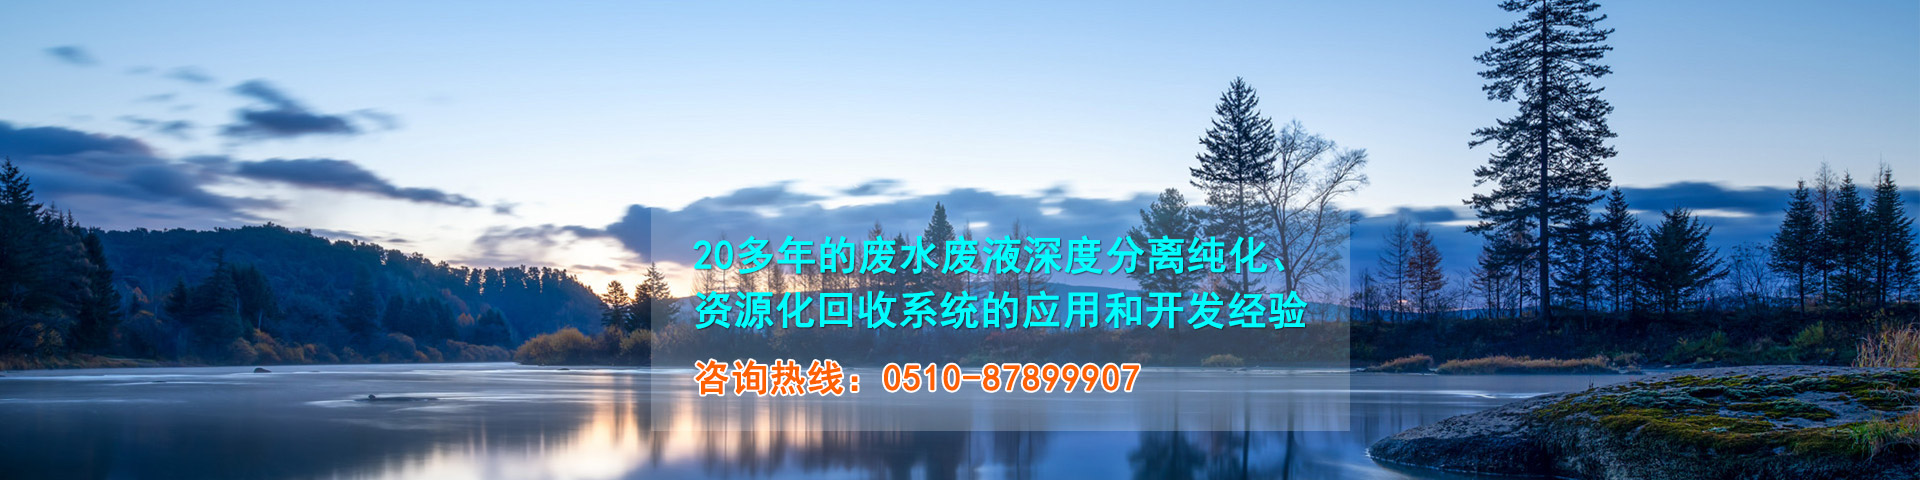 龙8-long8(中国)唯一官方网站_公司1327